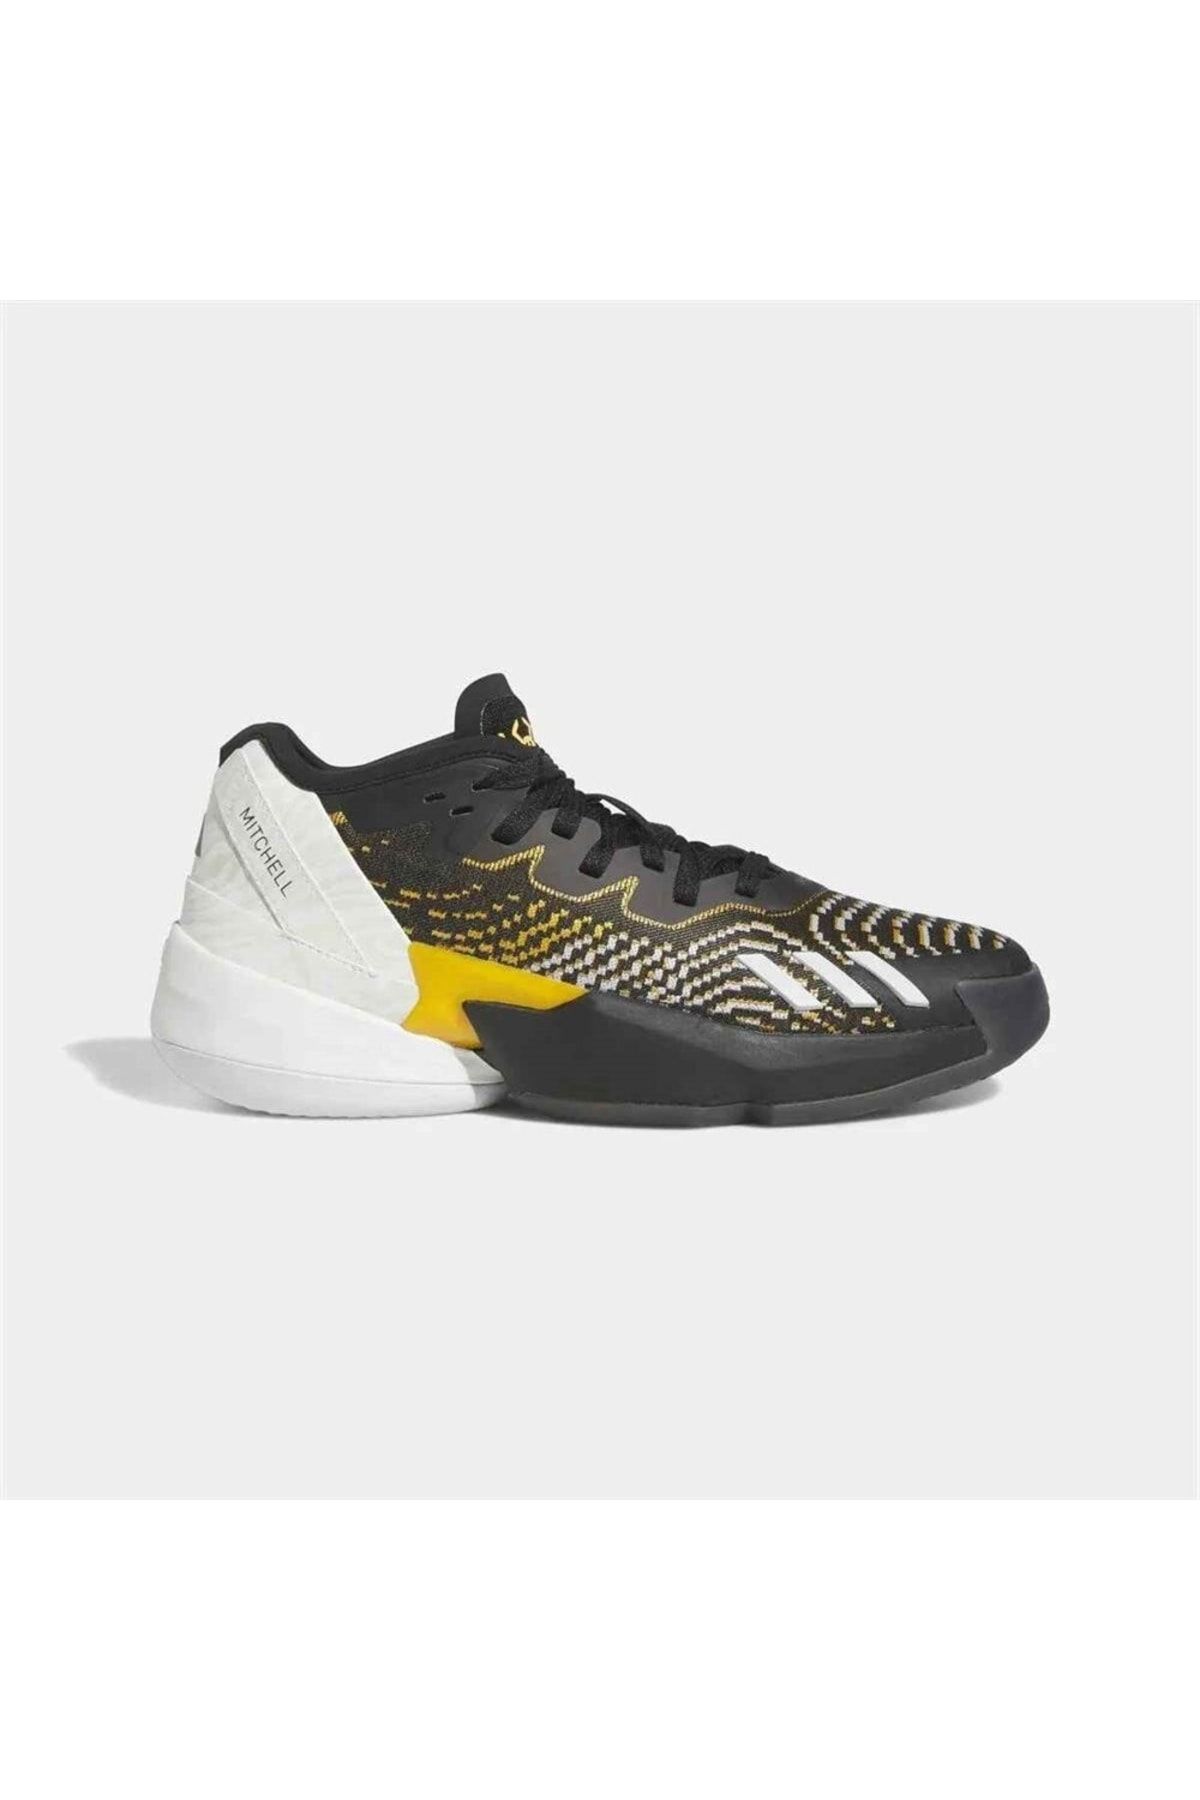 adidas D.o.n. Issue 4 Erkek Basketbol Ayakkabısı